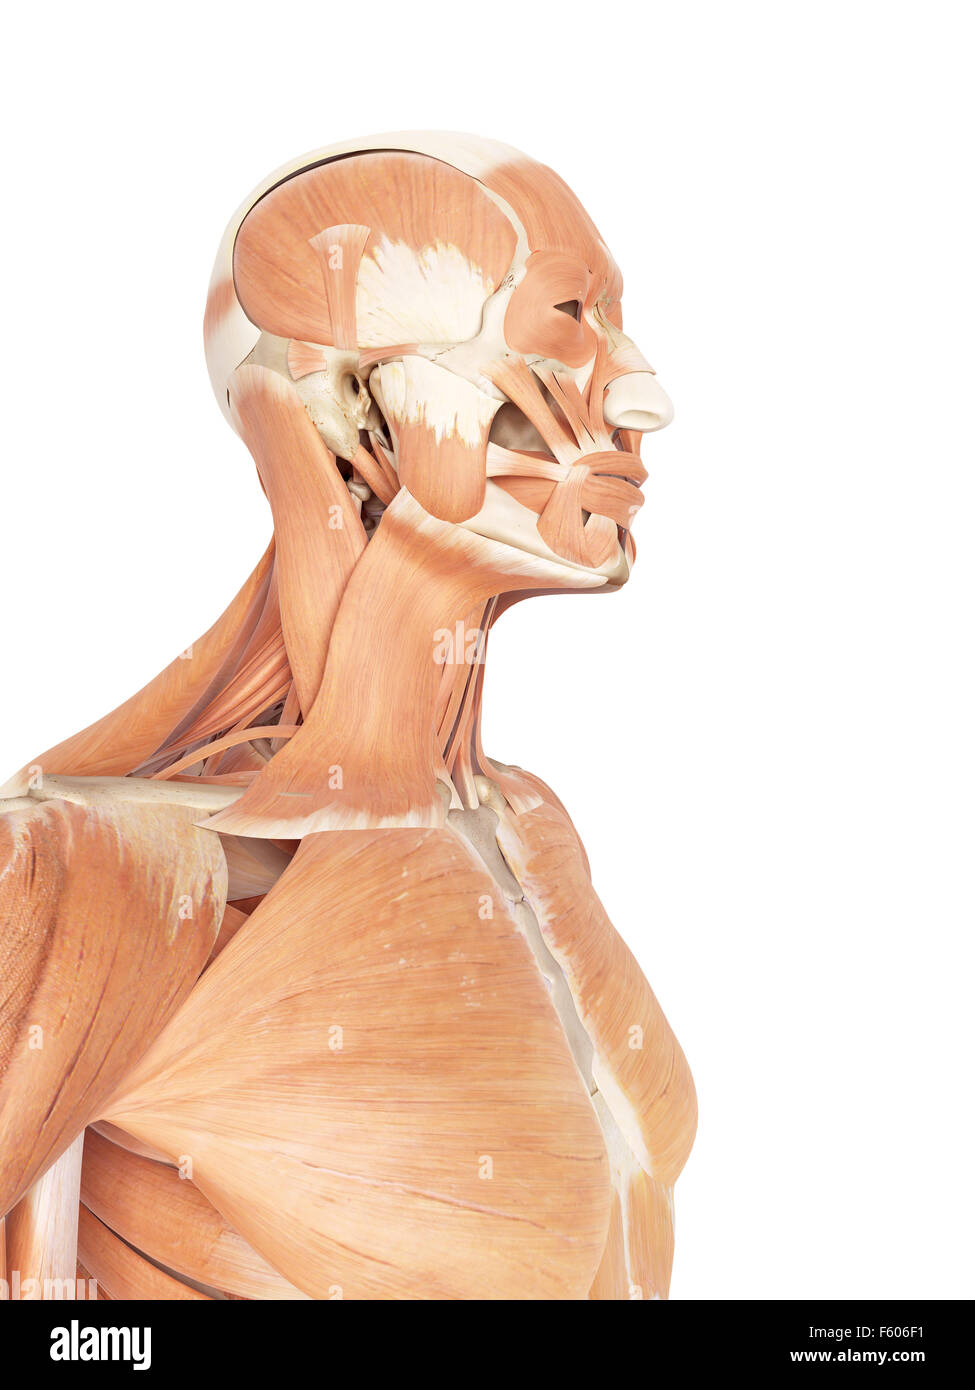 Précis de médecine illustration de la nuque et les muscles de la gorge Banque D'Images